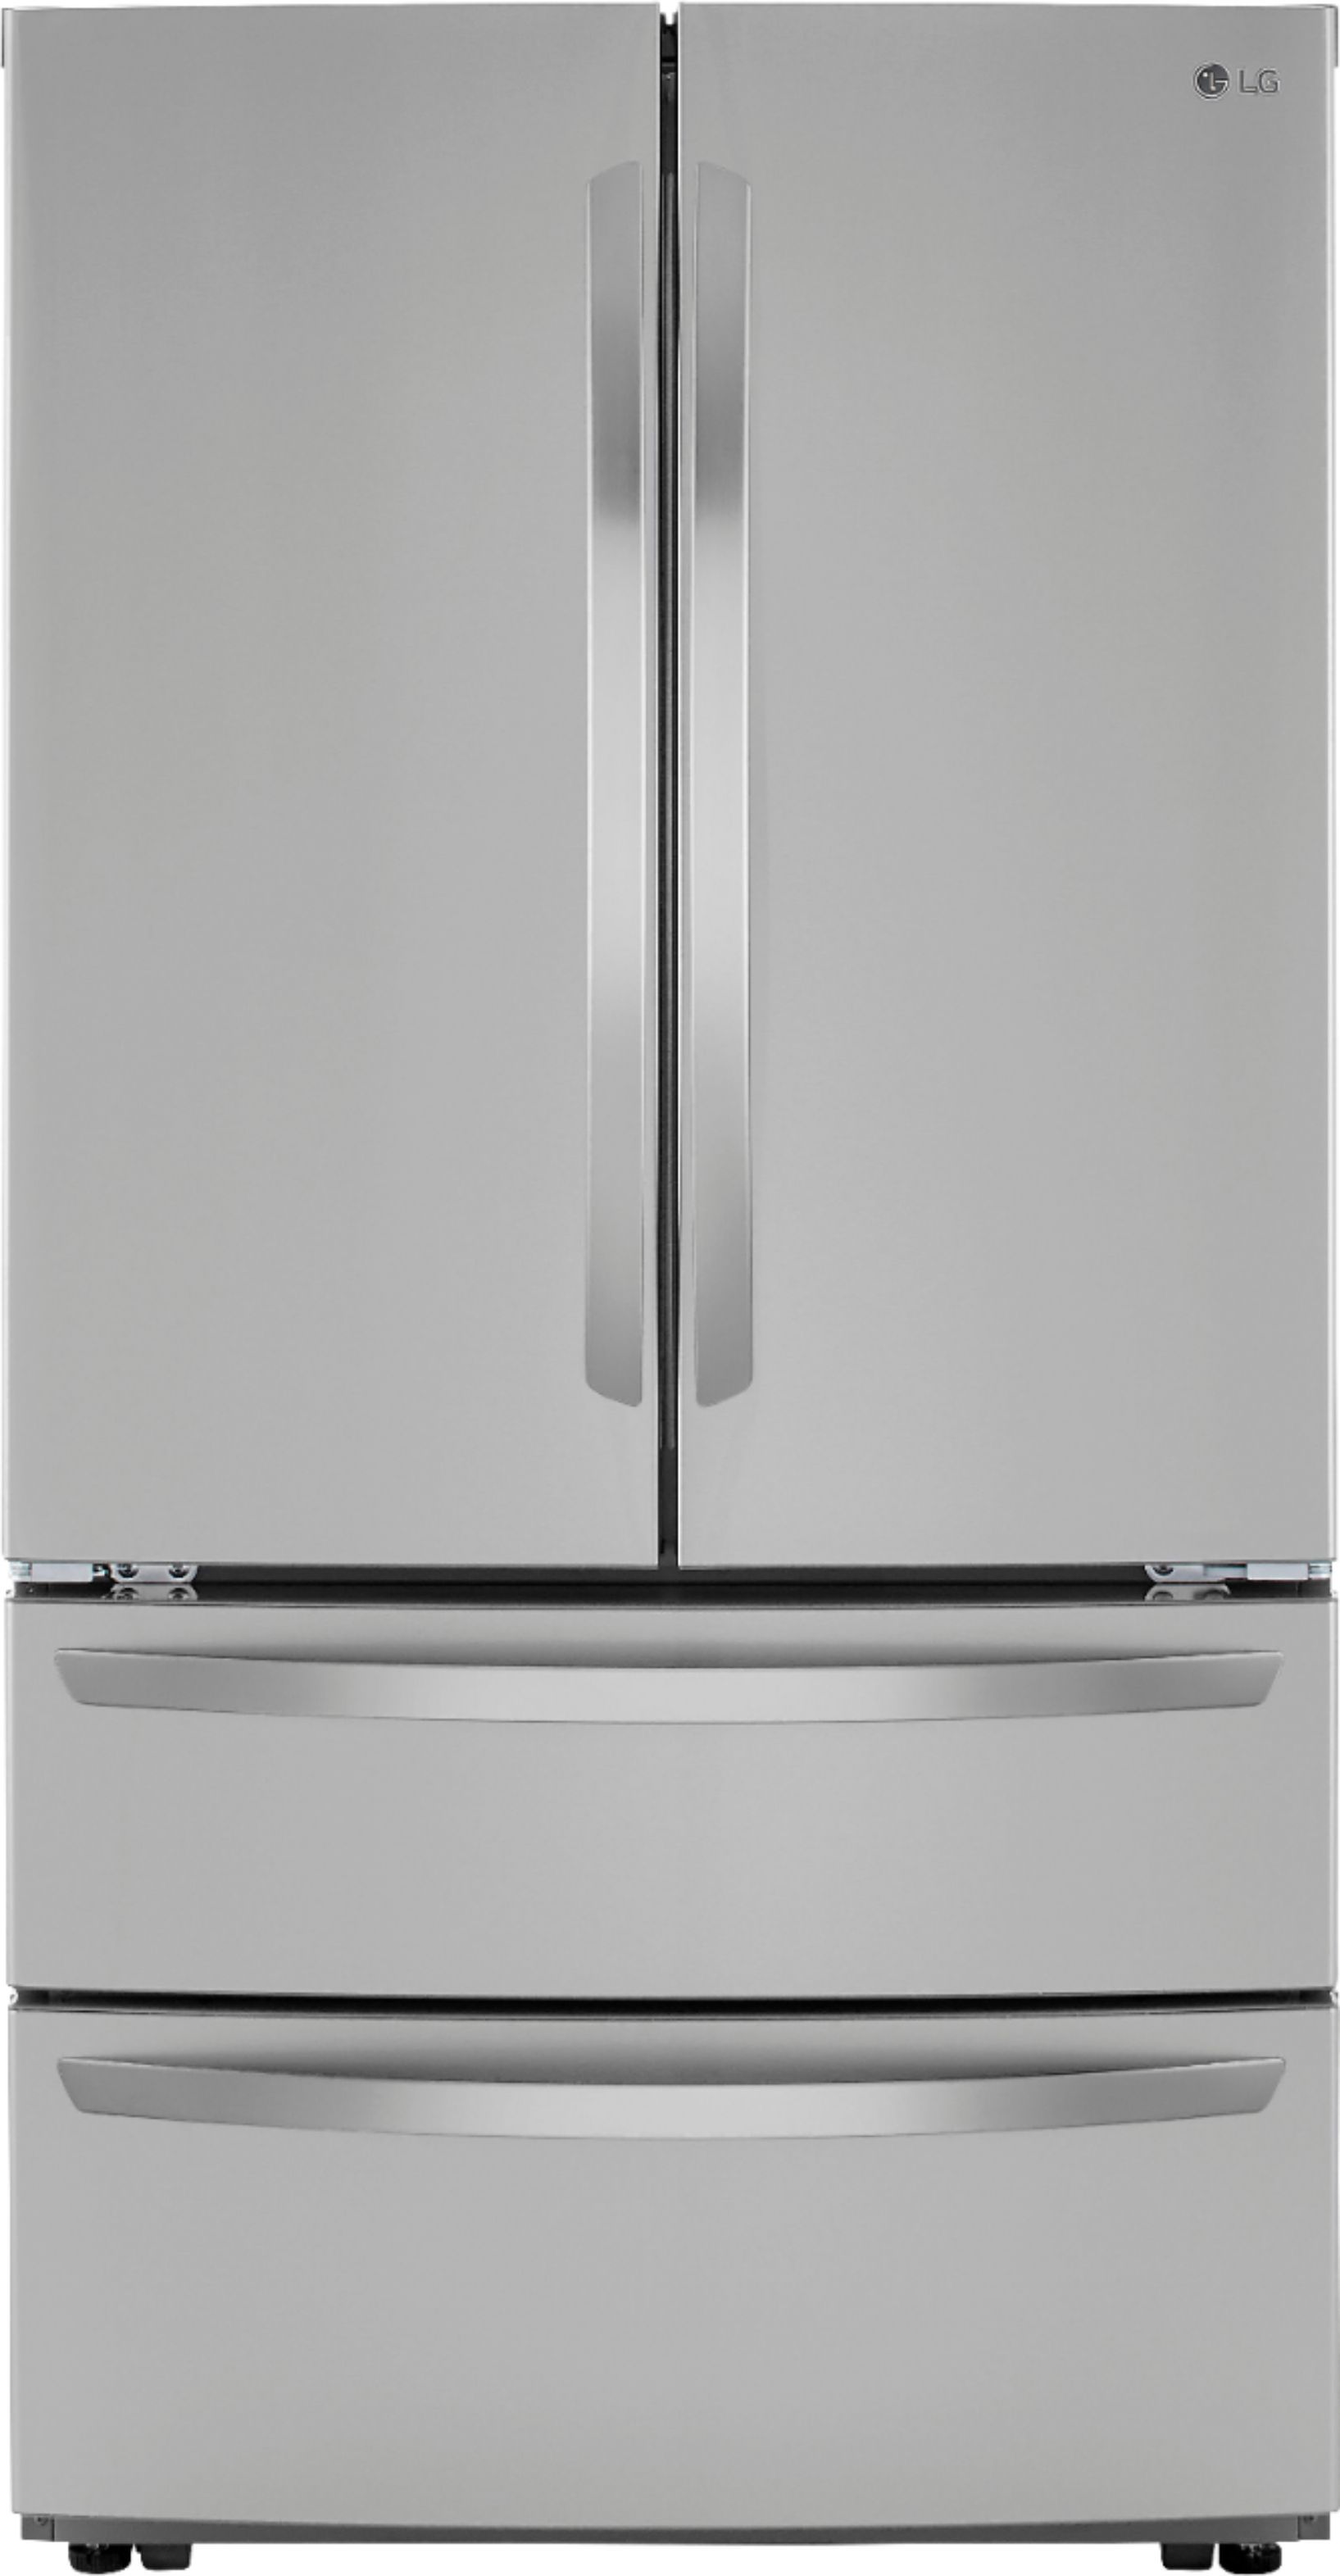 LG 22.7 Cu. Ft. 4-Door French Door Counter-Depth Refrigerator with Double Freezer and Internal Wa... | Best Buy U.S.